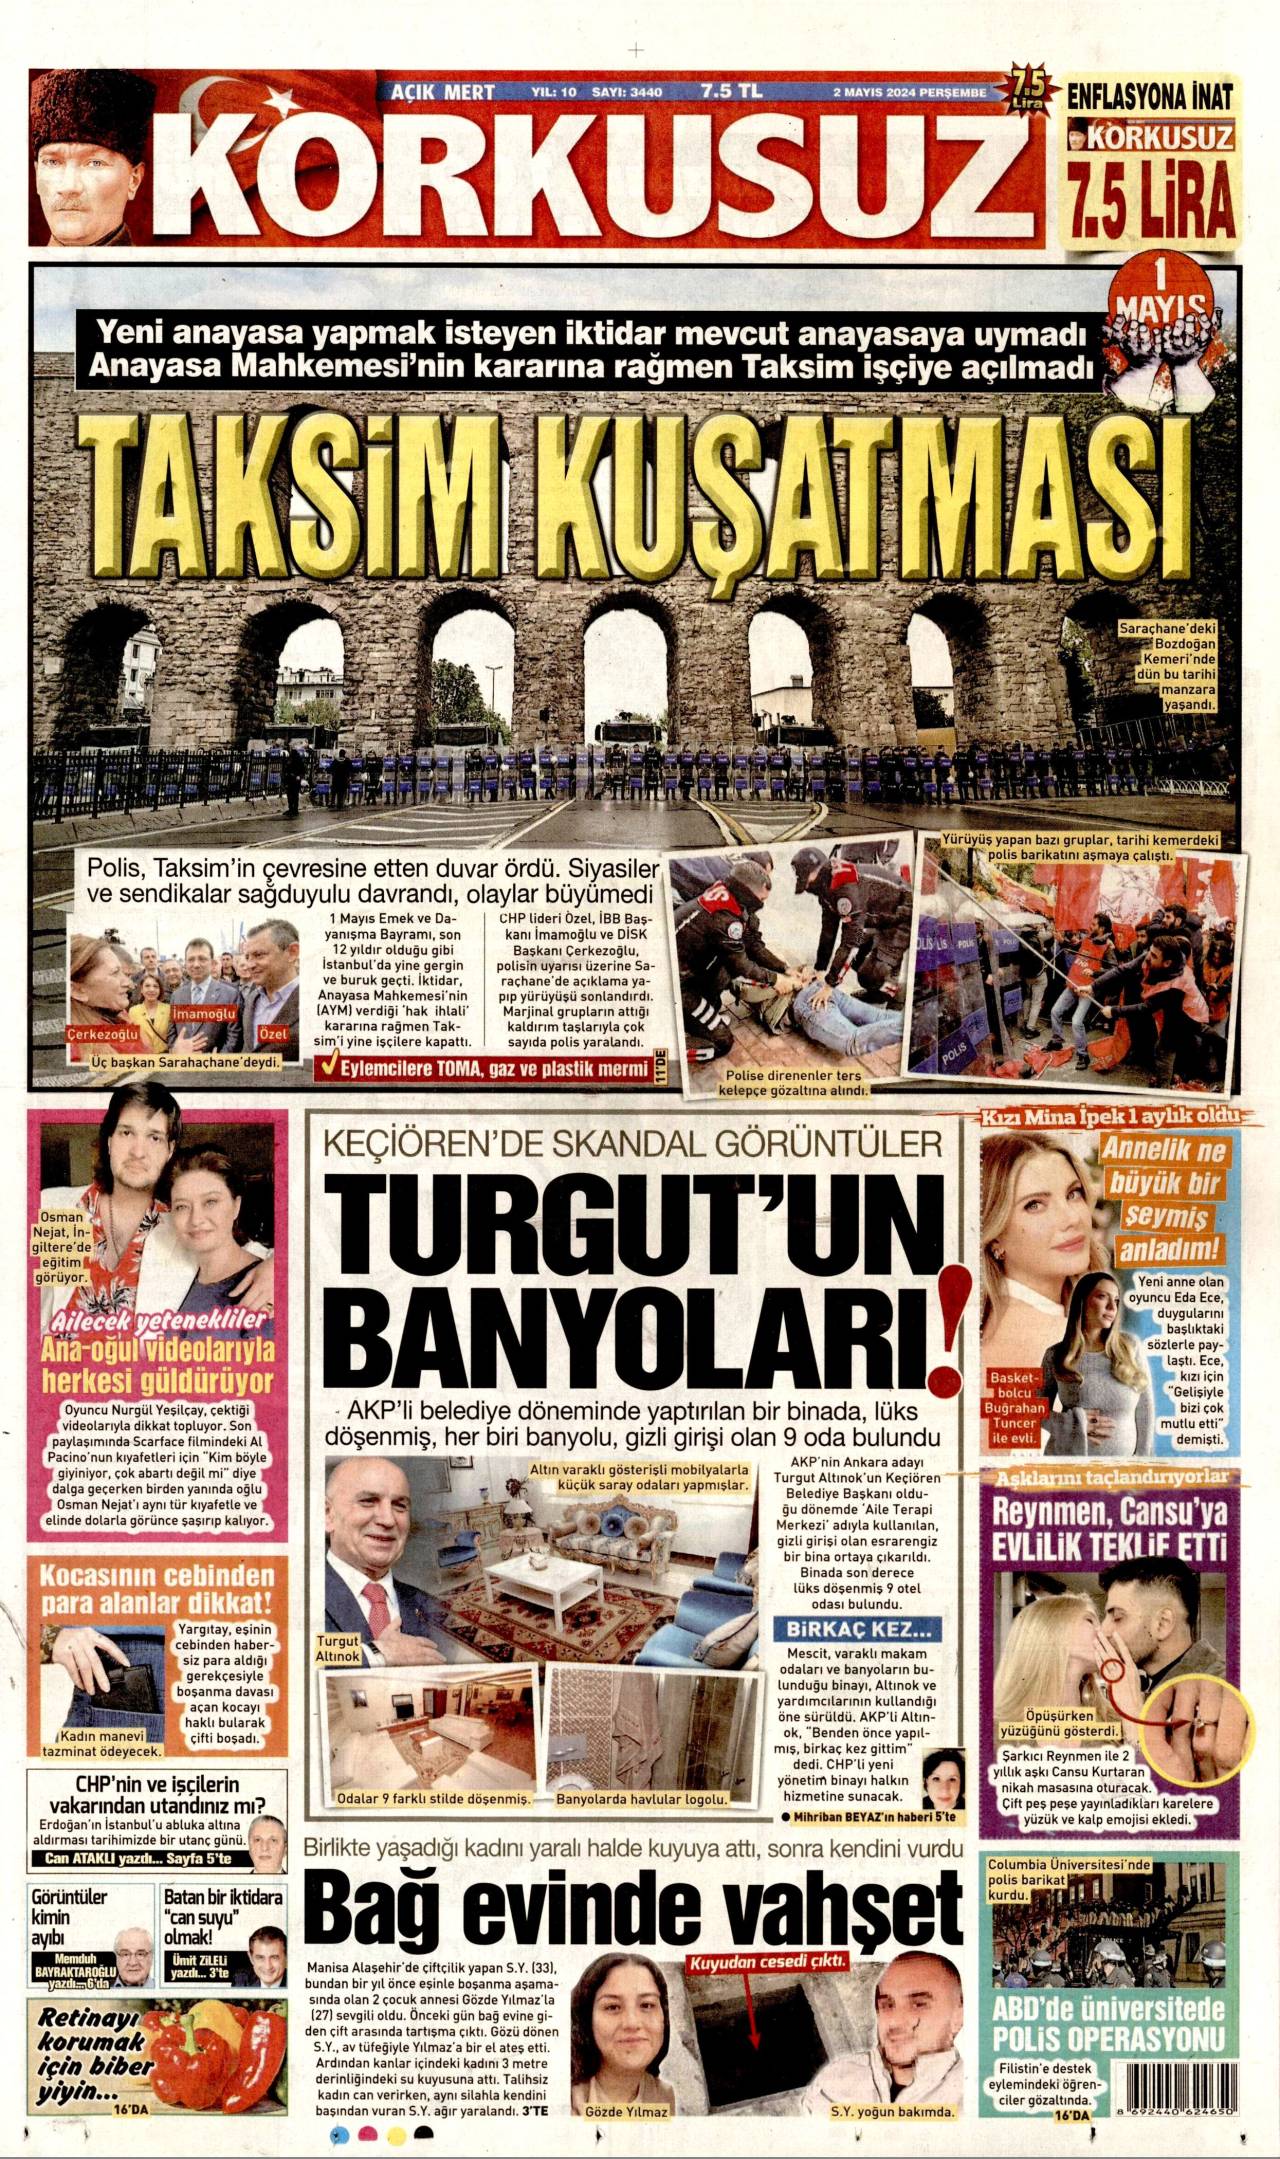 Karkusuz Gazetesi